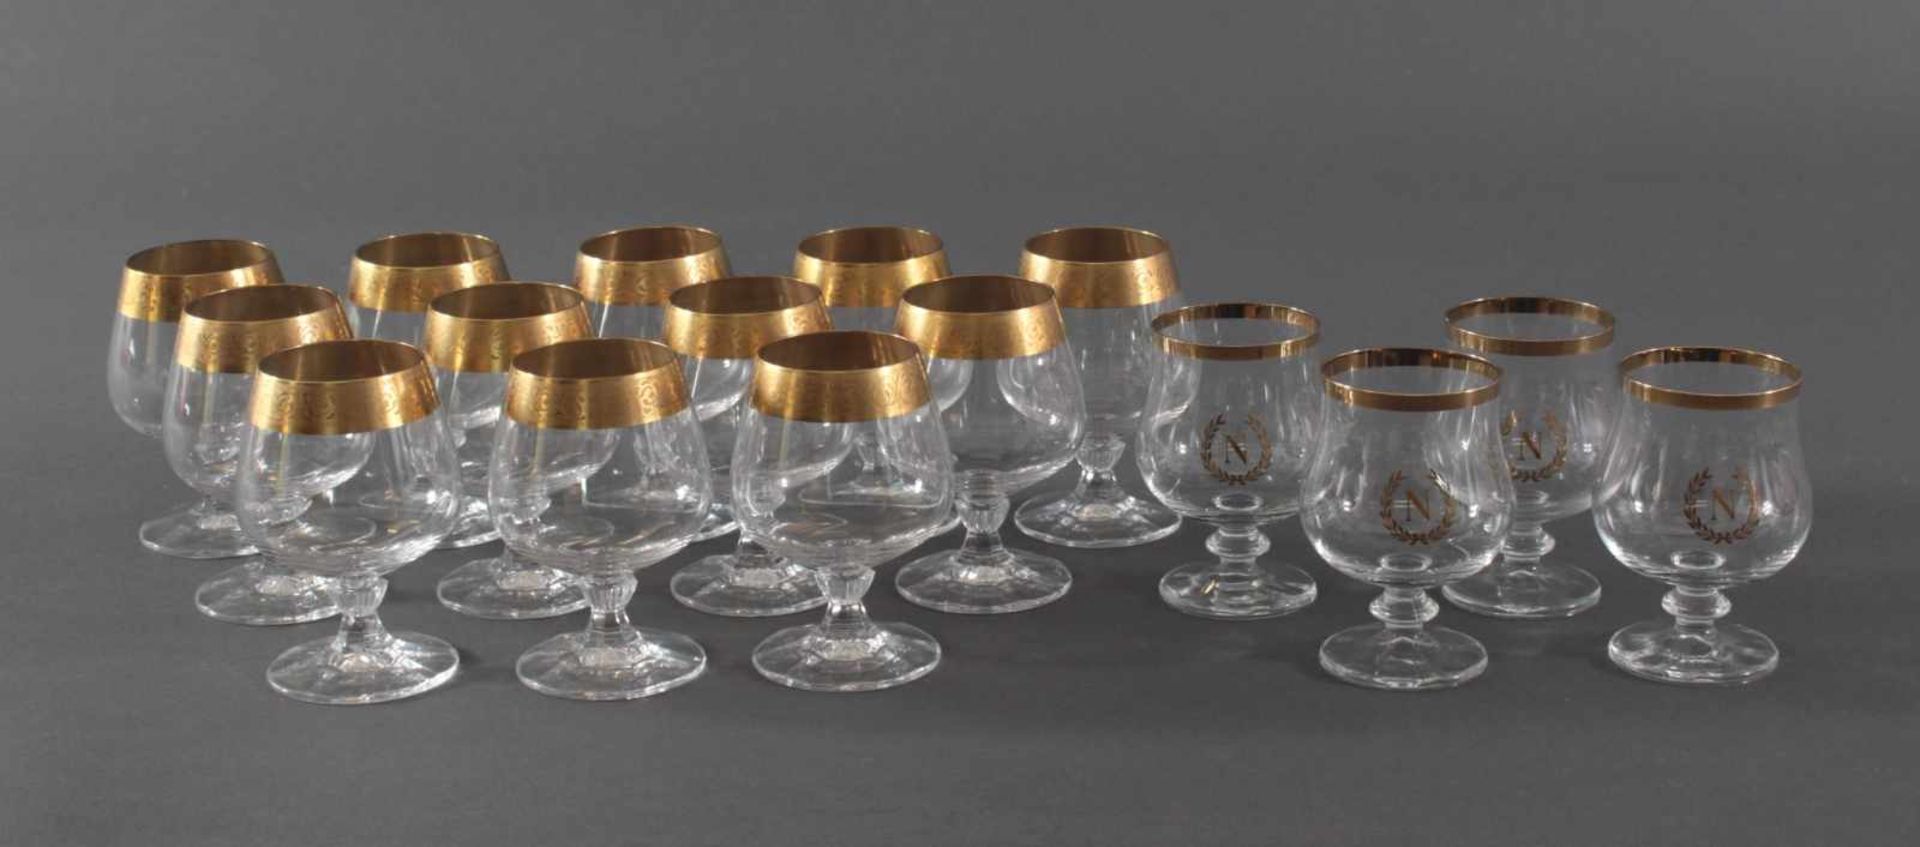 16 Cognac-Schwenker mit GoldrandFarbloses Glas, alle Teile mit Goldrand, ungemarkt.12 mit breiter,